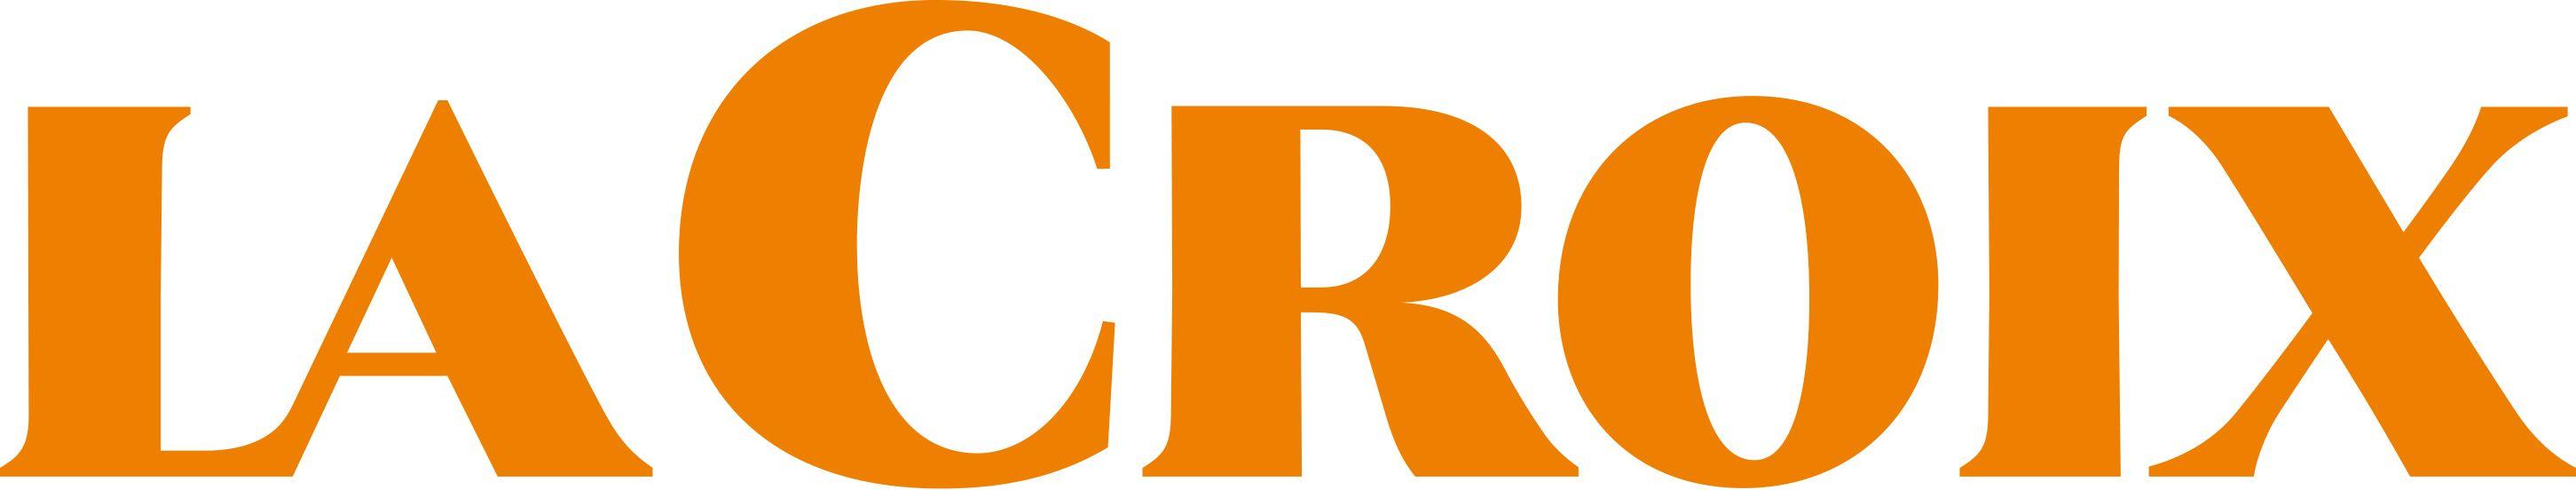 Lacroix Logo - La croix Logos